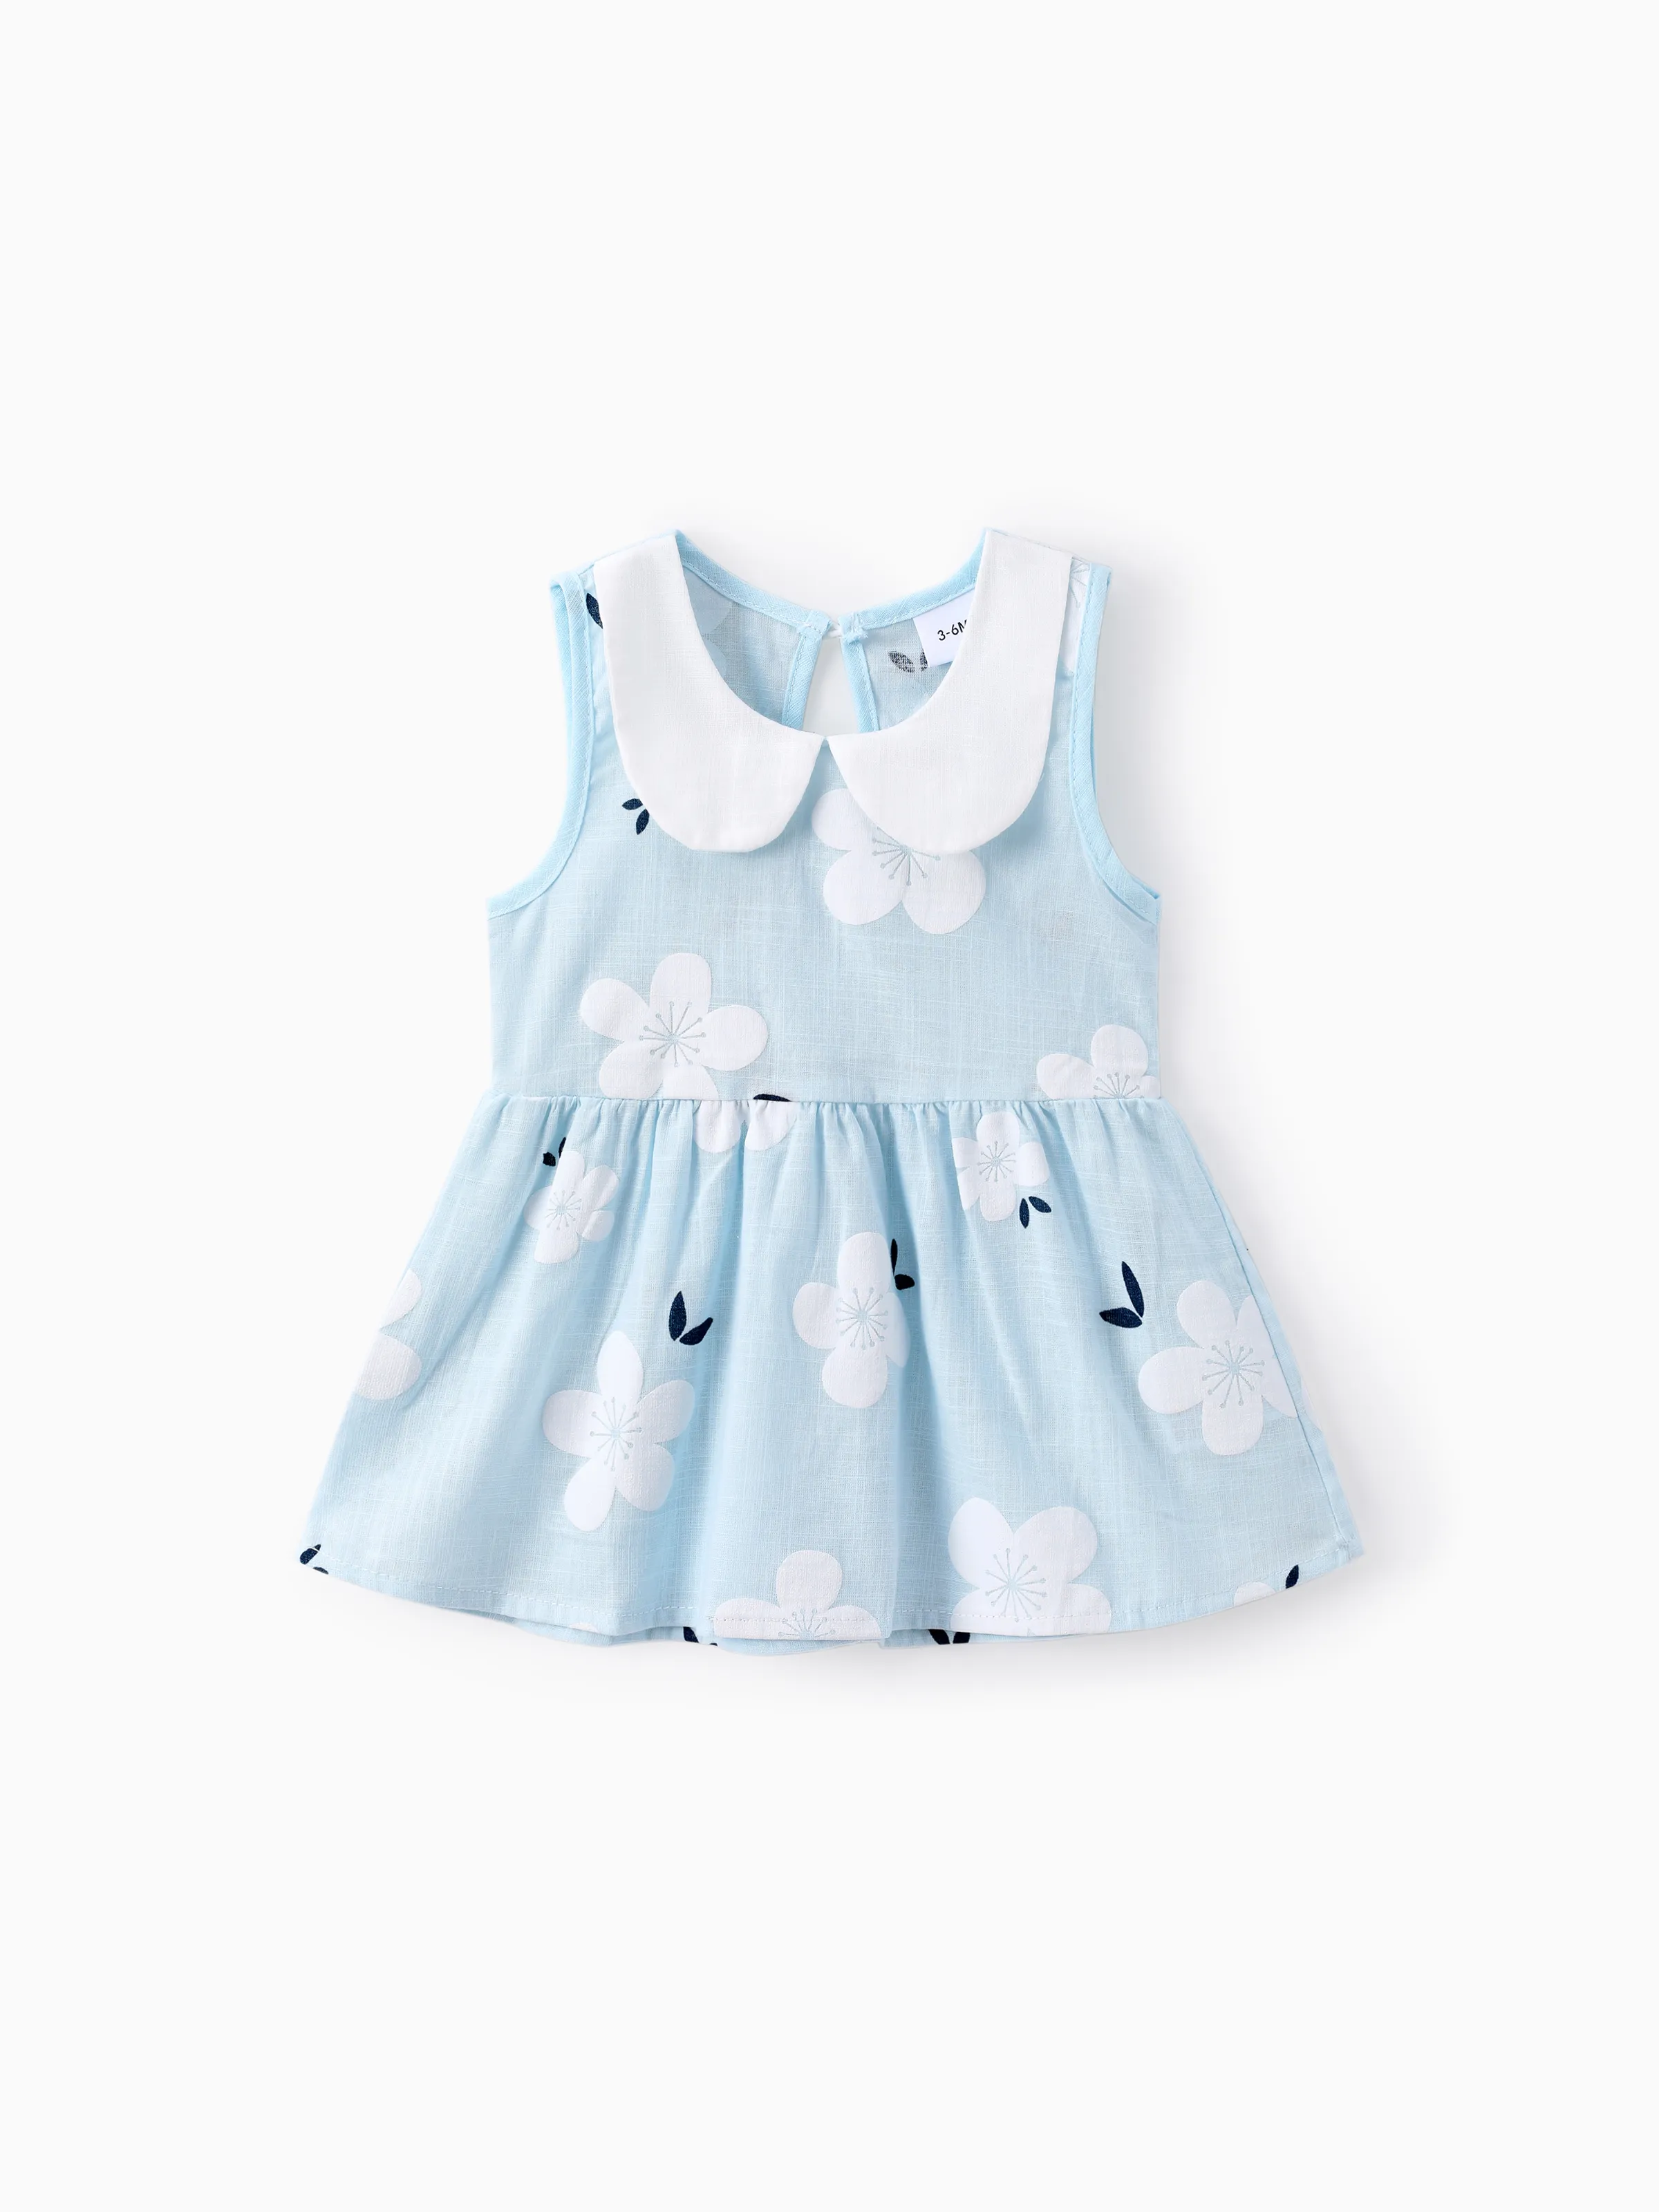 

100% Cotton Baby Girl Peter Pan Collar Floral Print Tank Dress